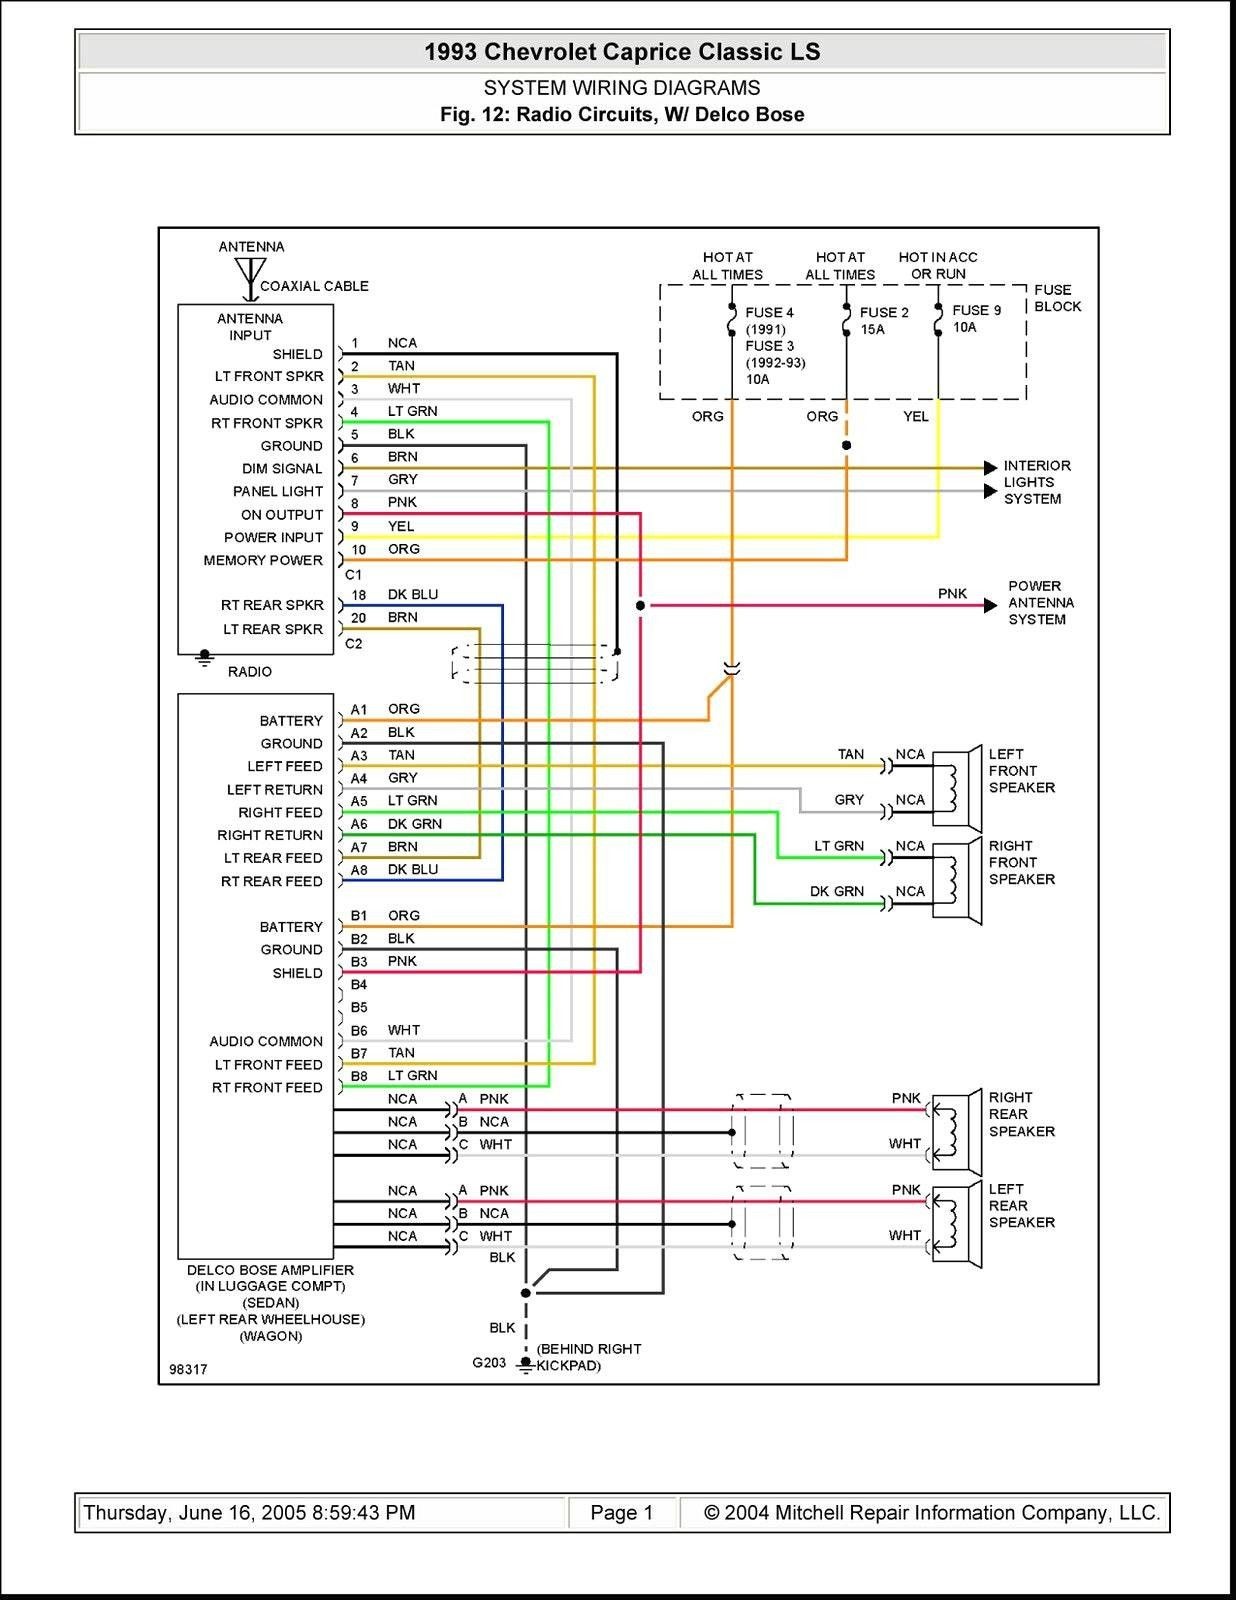 2004 Grand Cherokee Electrical Diagram 25 Good Sample Motor Control Panel Wiring Diagram Of 2004 Grand Cherokee Electrical Diagram